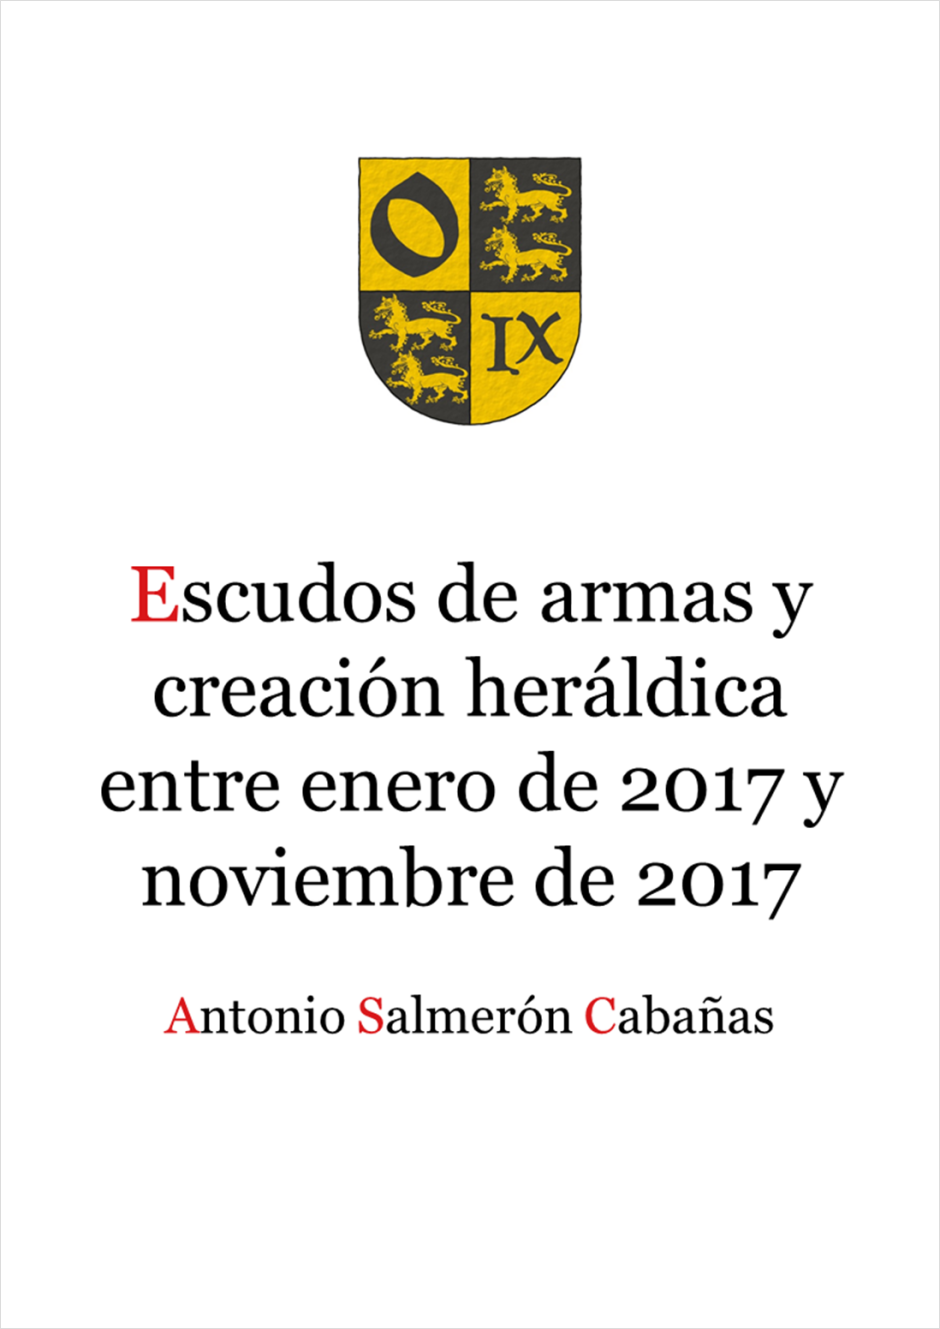 Escudos de armas y creación heráldica entre enero de 2017 y noviembre de 2017